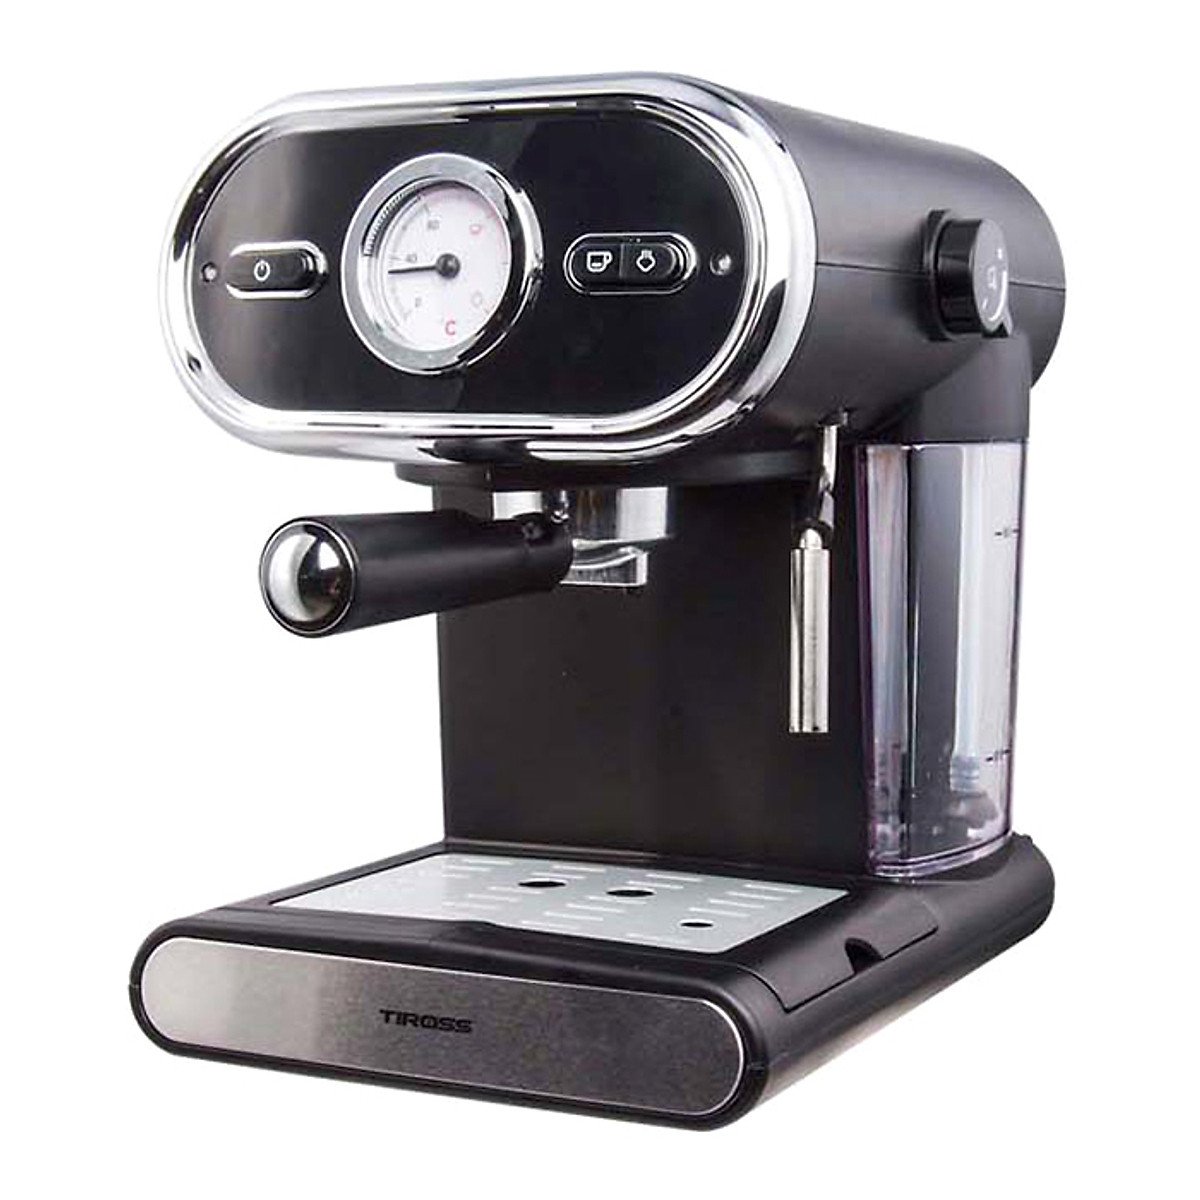 Máy pha cà phê Tiross Espresso TS6211